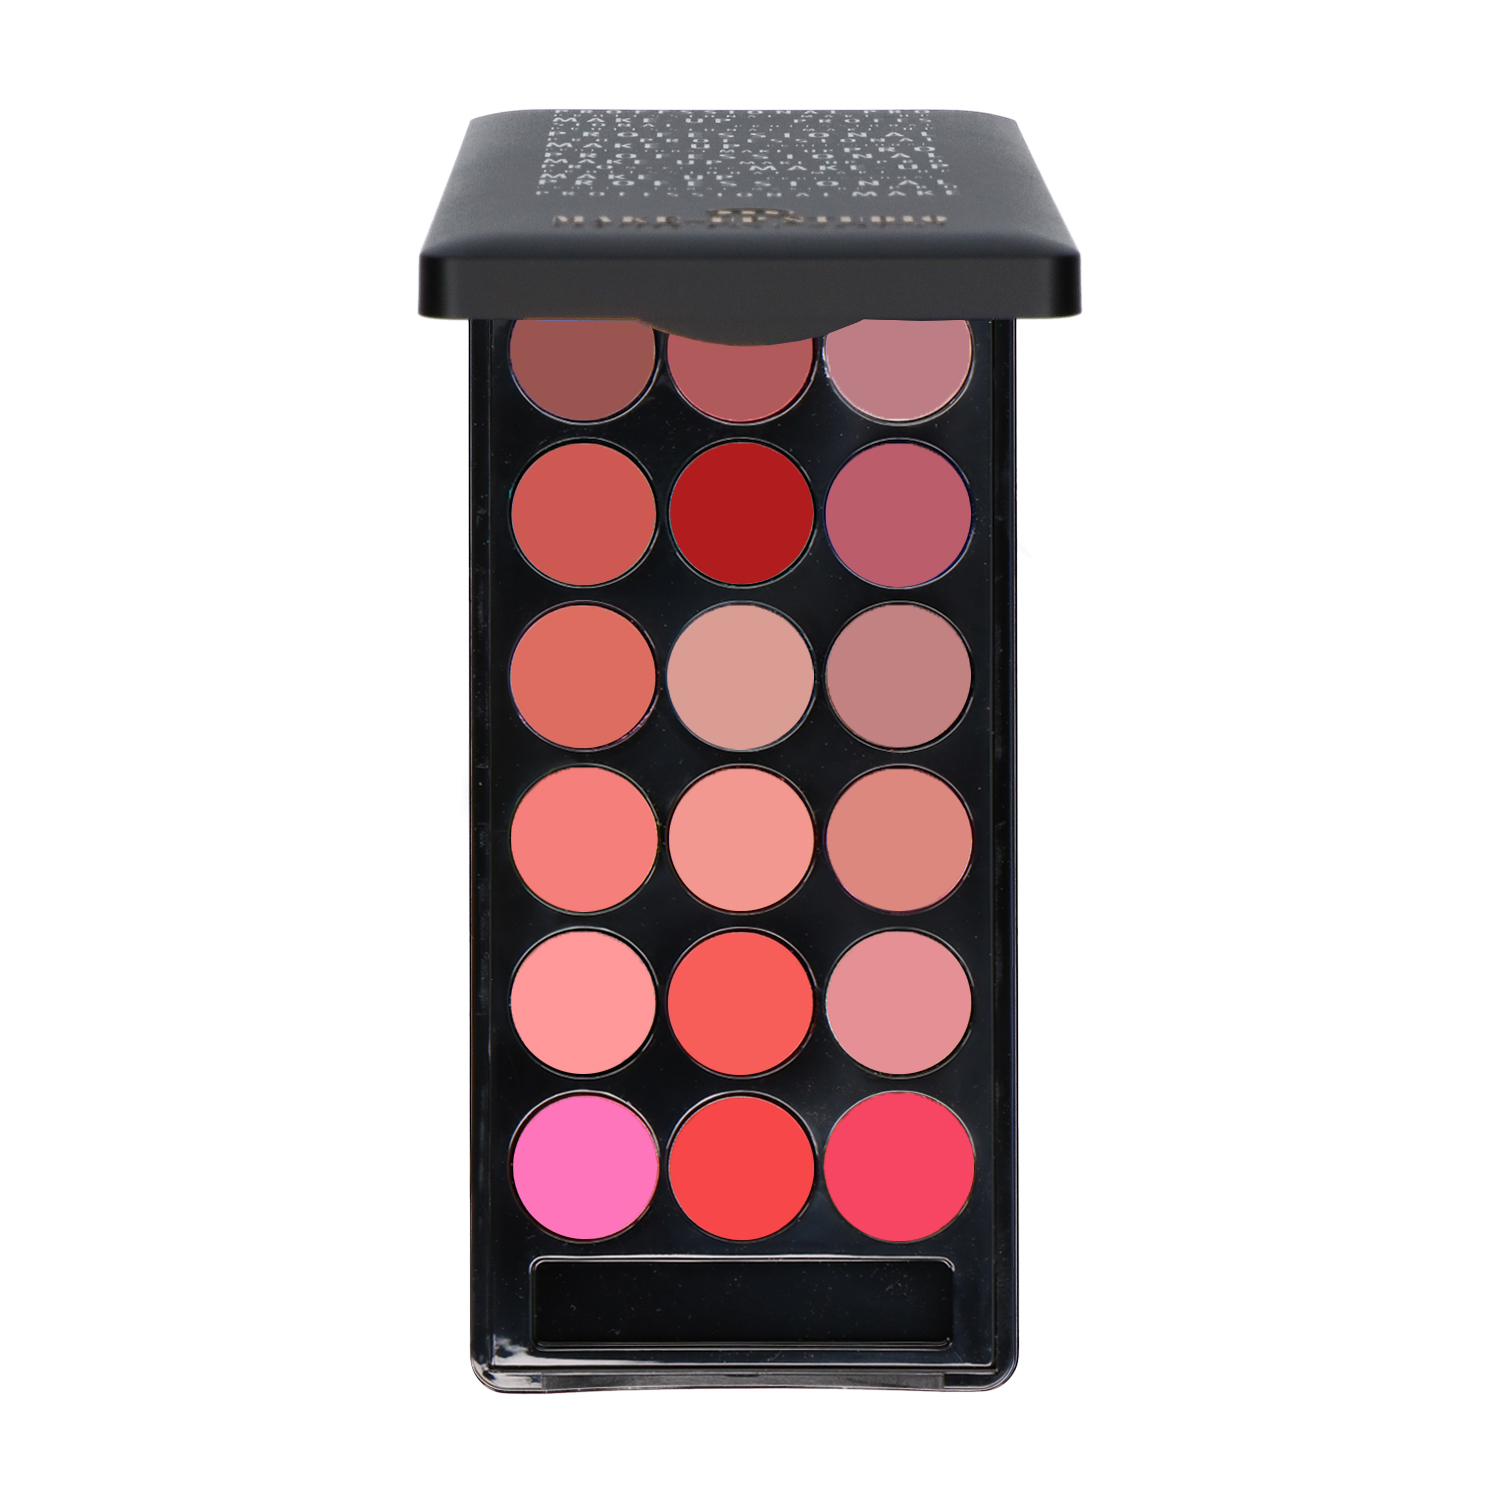 Make-up Studio Lipcolourbox met 18 kleuren lippenstift - 7